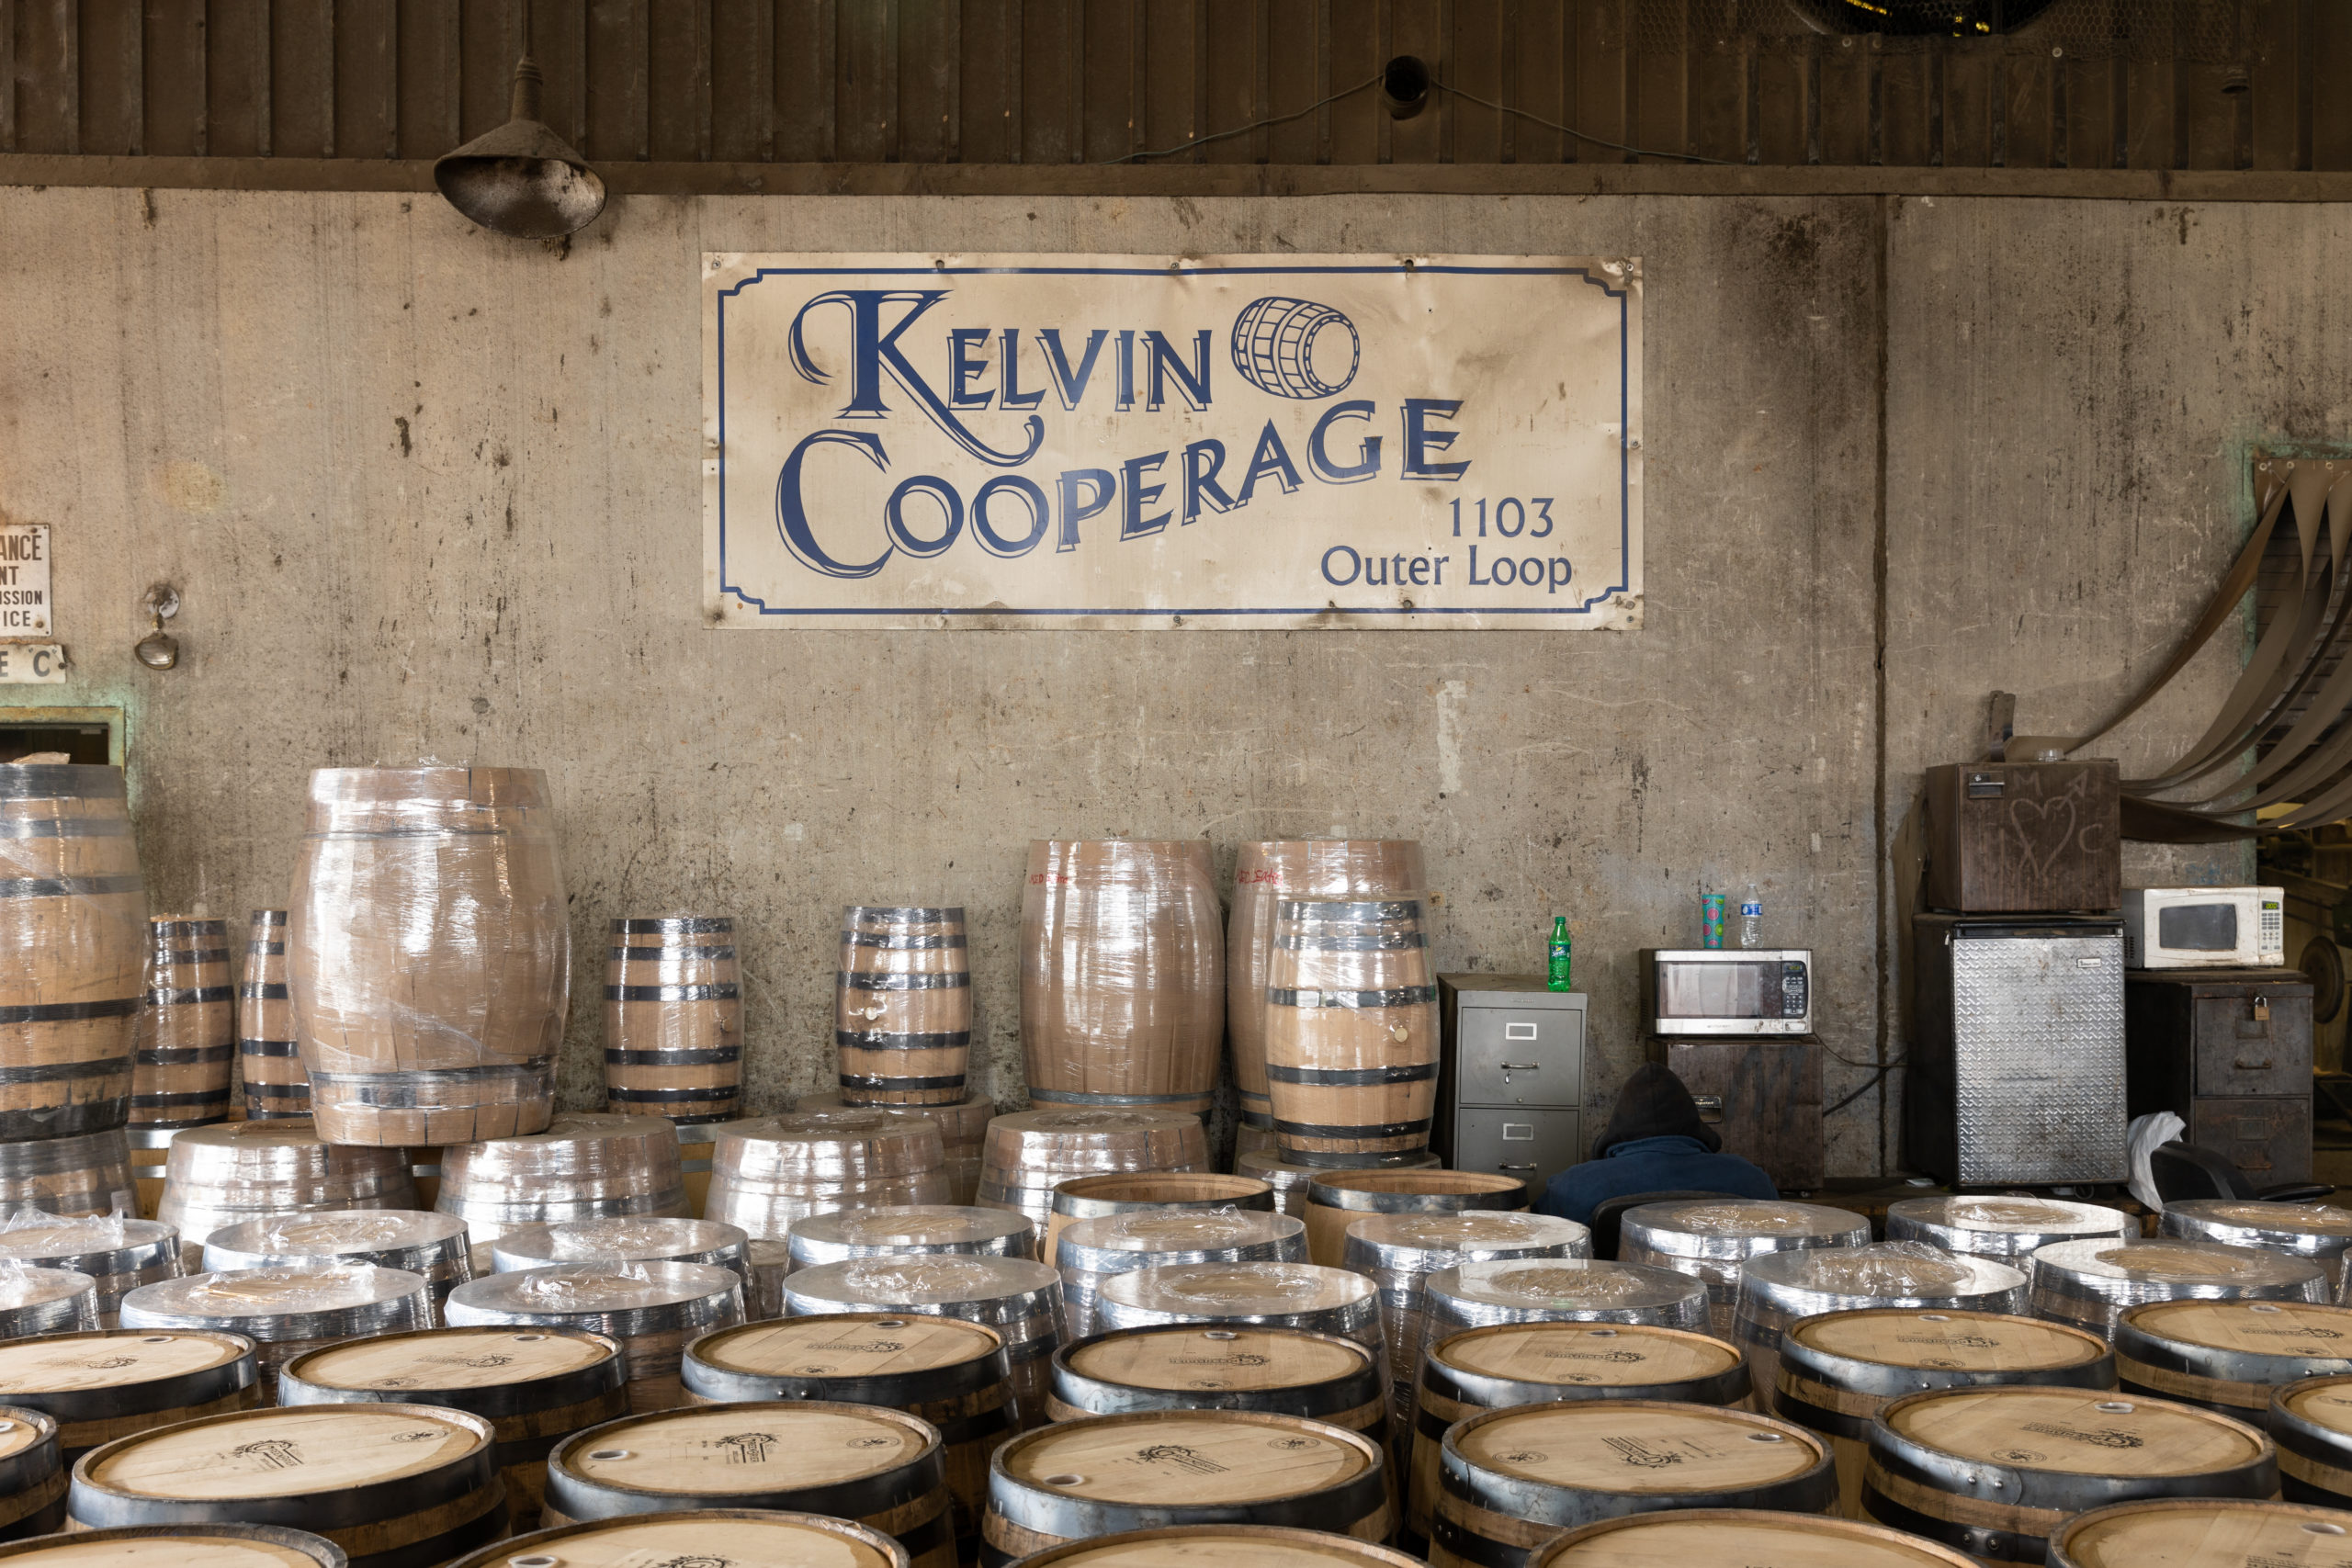 Kelvin Cooperage sign and barrels